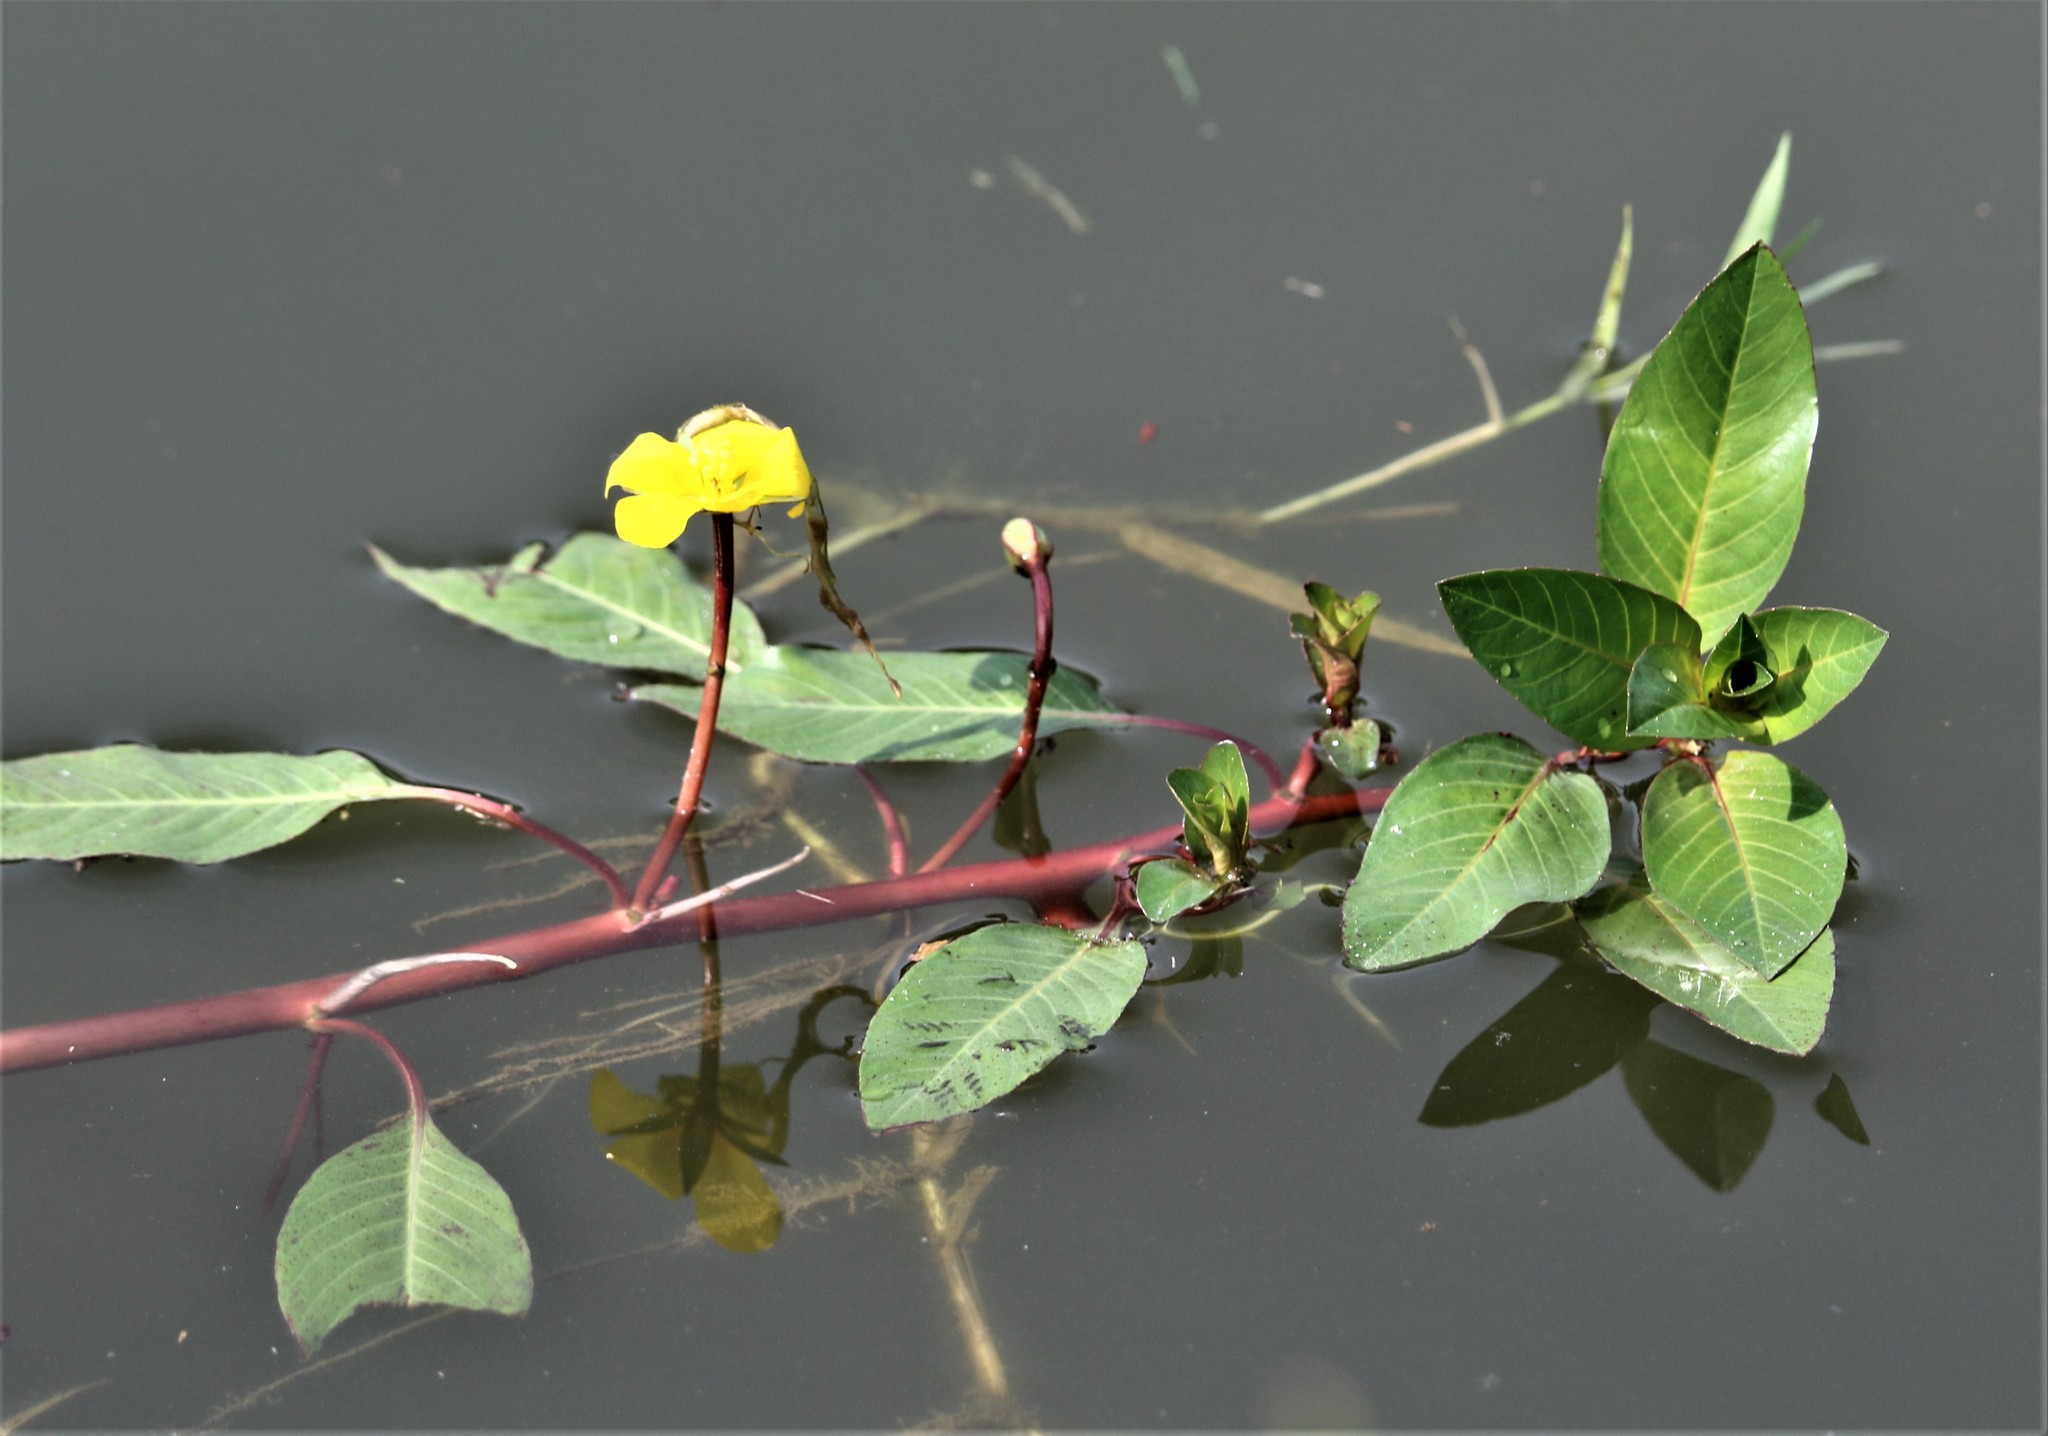 Floating Primrose-willow